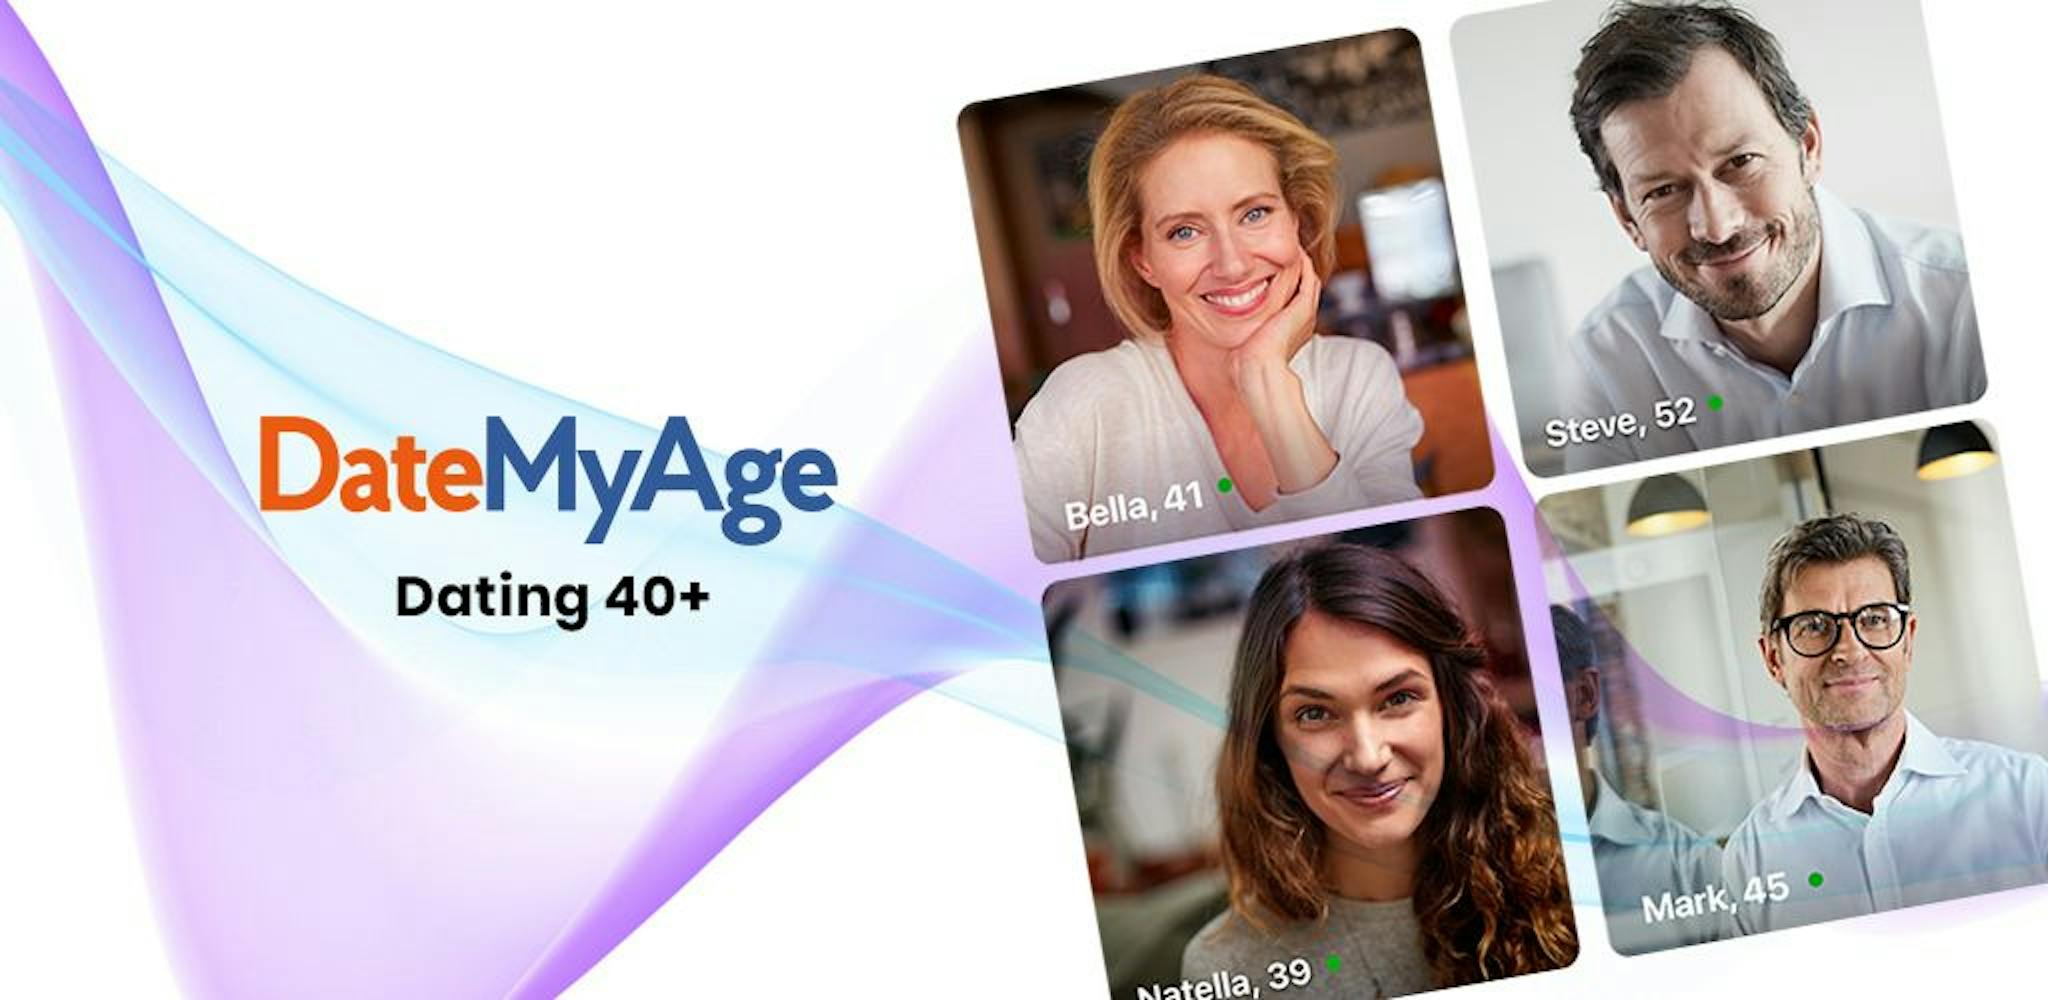 DateMyAge – eine Nischen-Dating-App der Social Discovery Group für Personen über 40